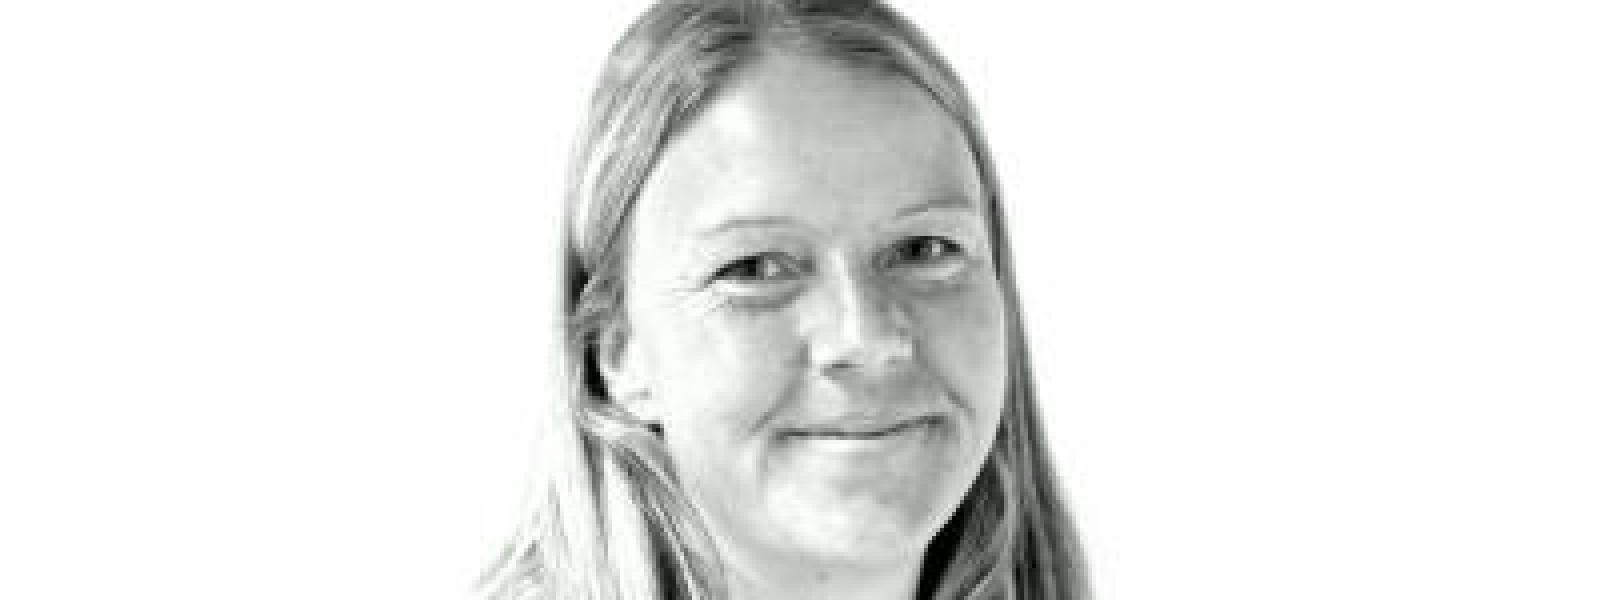 Rikke Yndgaard, adjunkt i matematik og tysk på Borupgaard Gymnasium